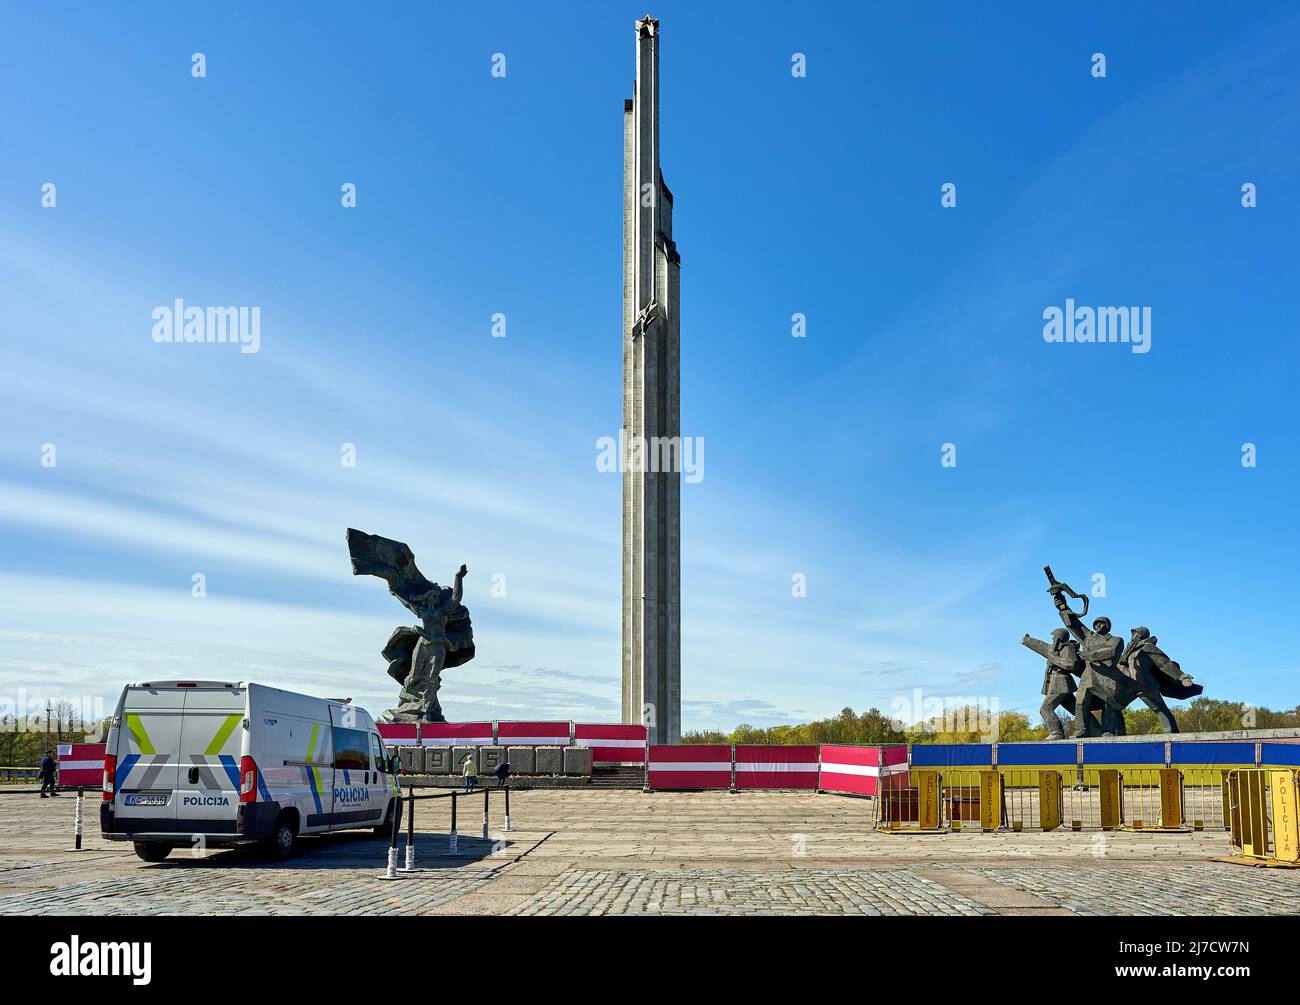 RIGA, LETONIA - 8 de mayo de 2022: Parque Victory (parques de Uzvars) decorado con banderas letonas y ucranianas. La policía está de servicio. Foto de stock